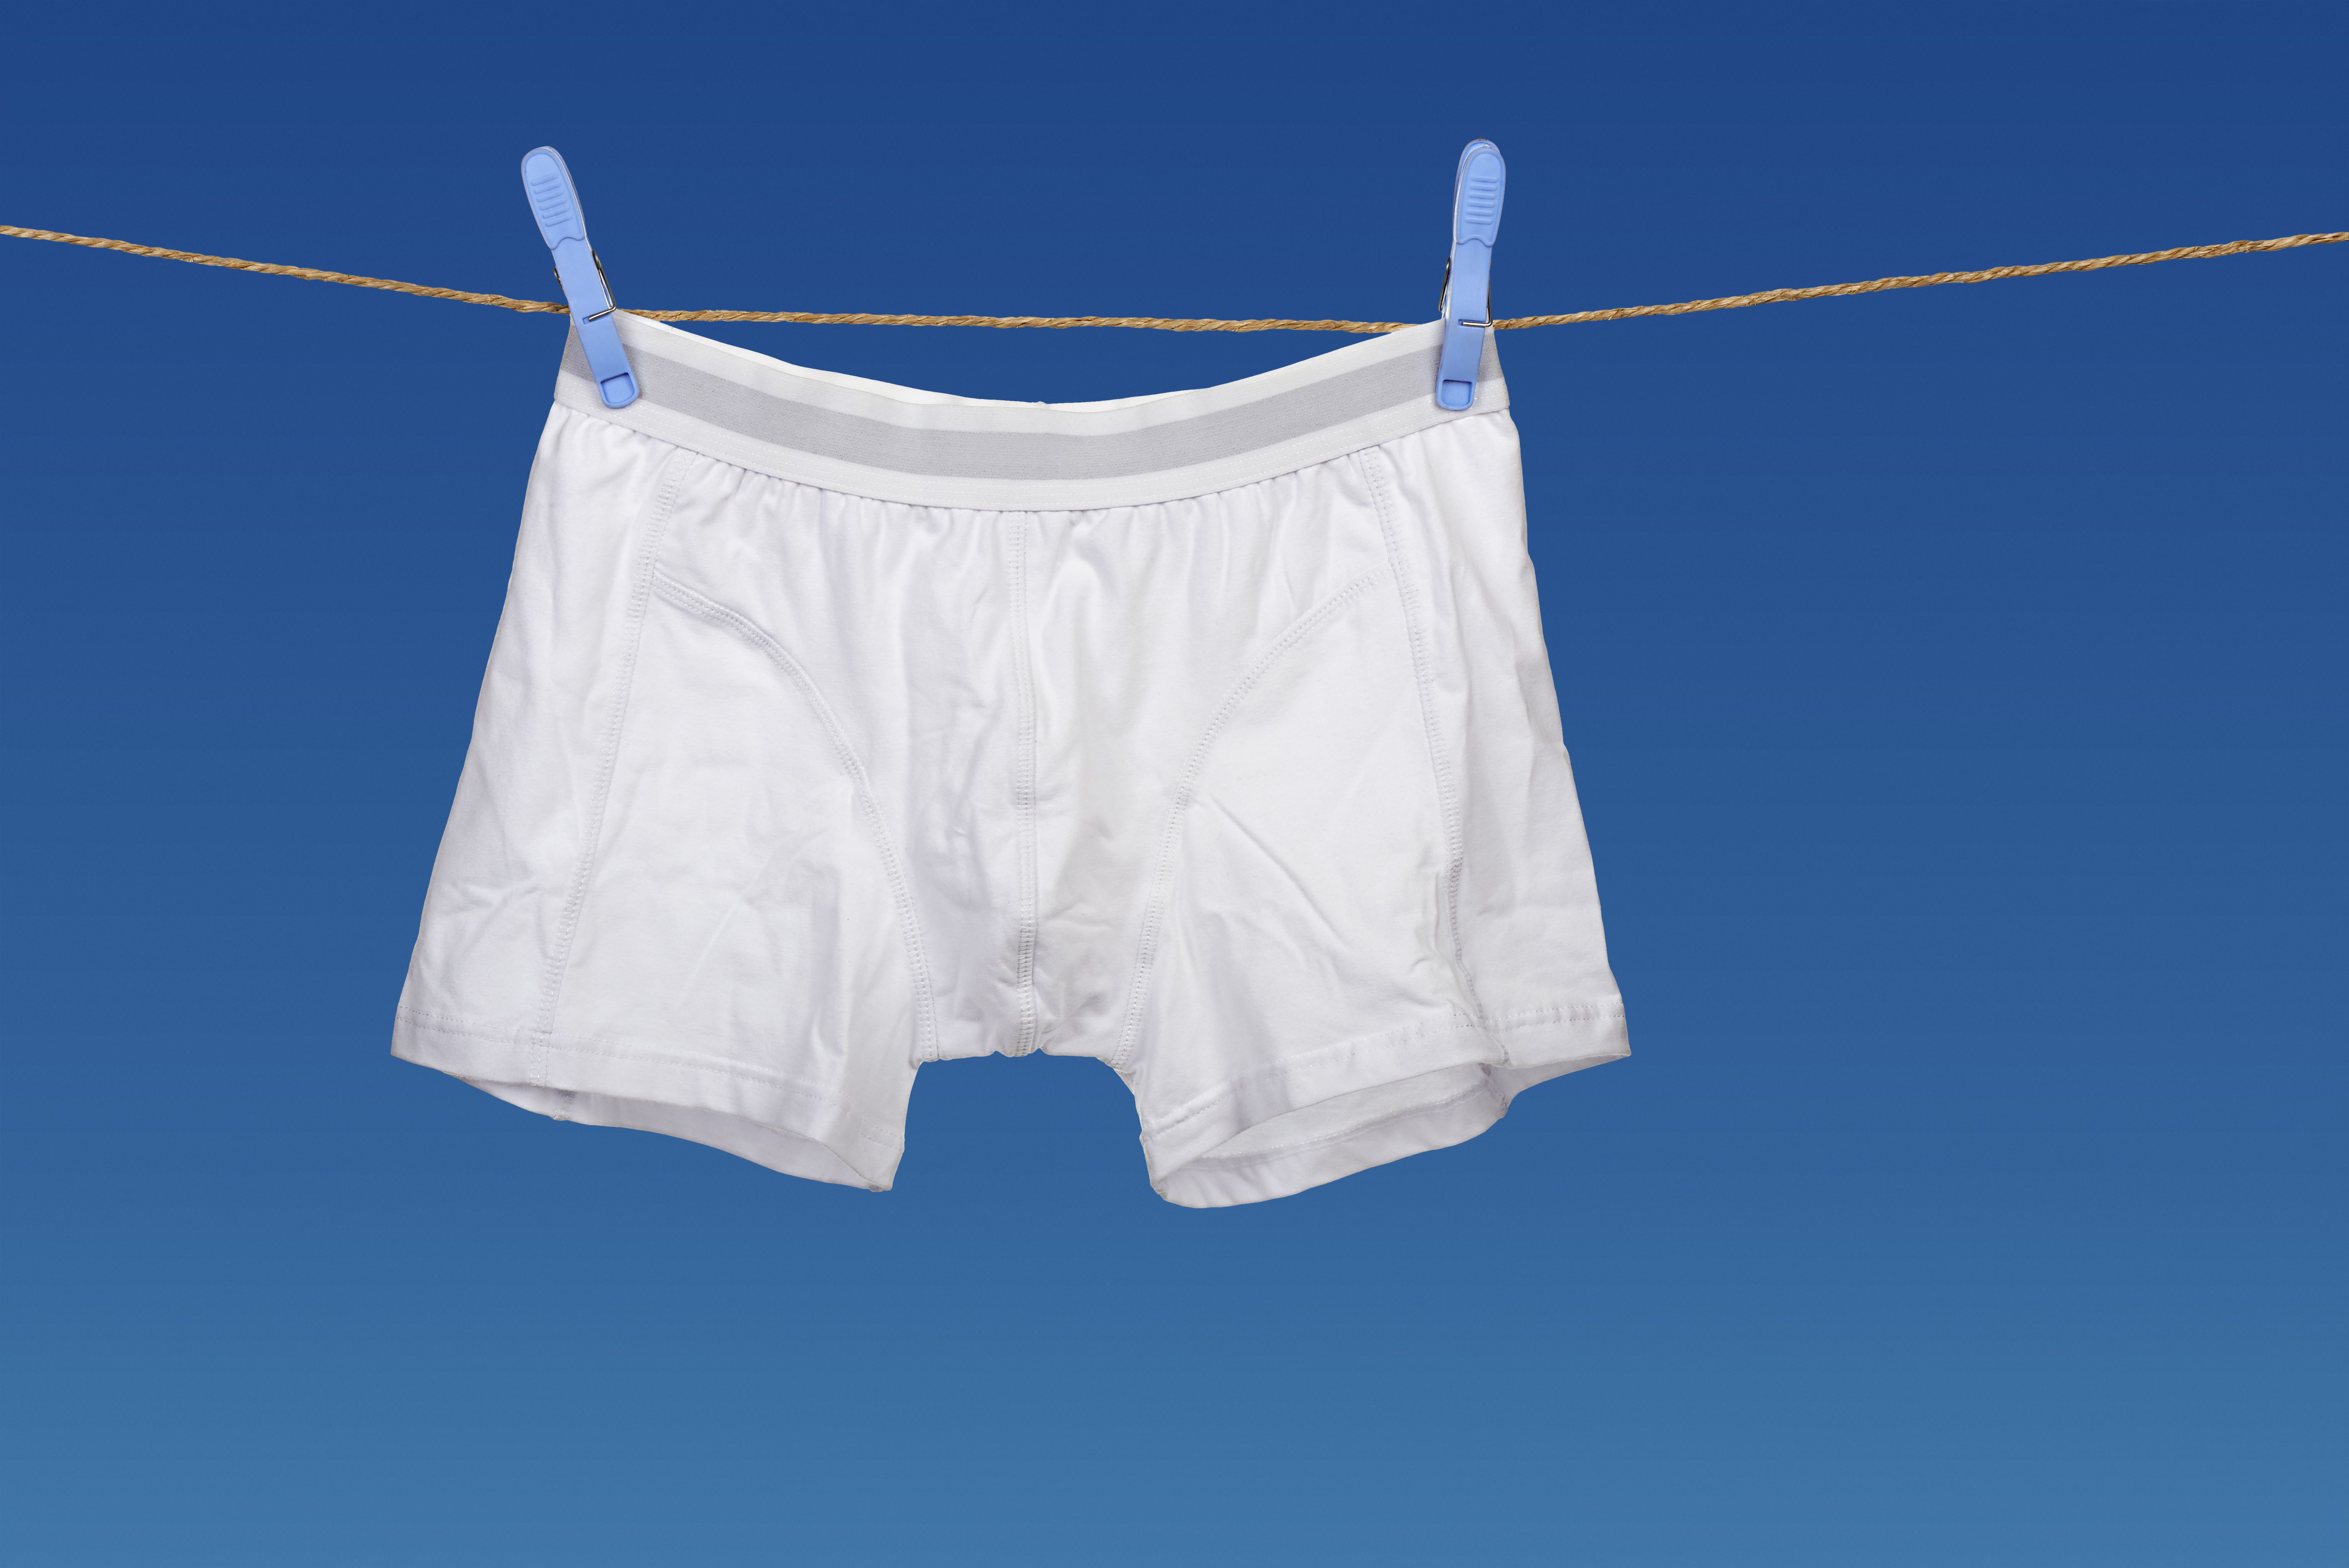 La elección de la ropa interior masculina puede influir en la salud de los espermatozoides